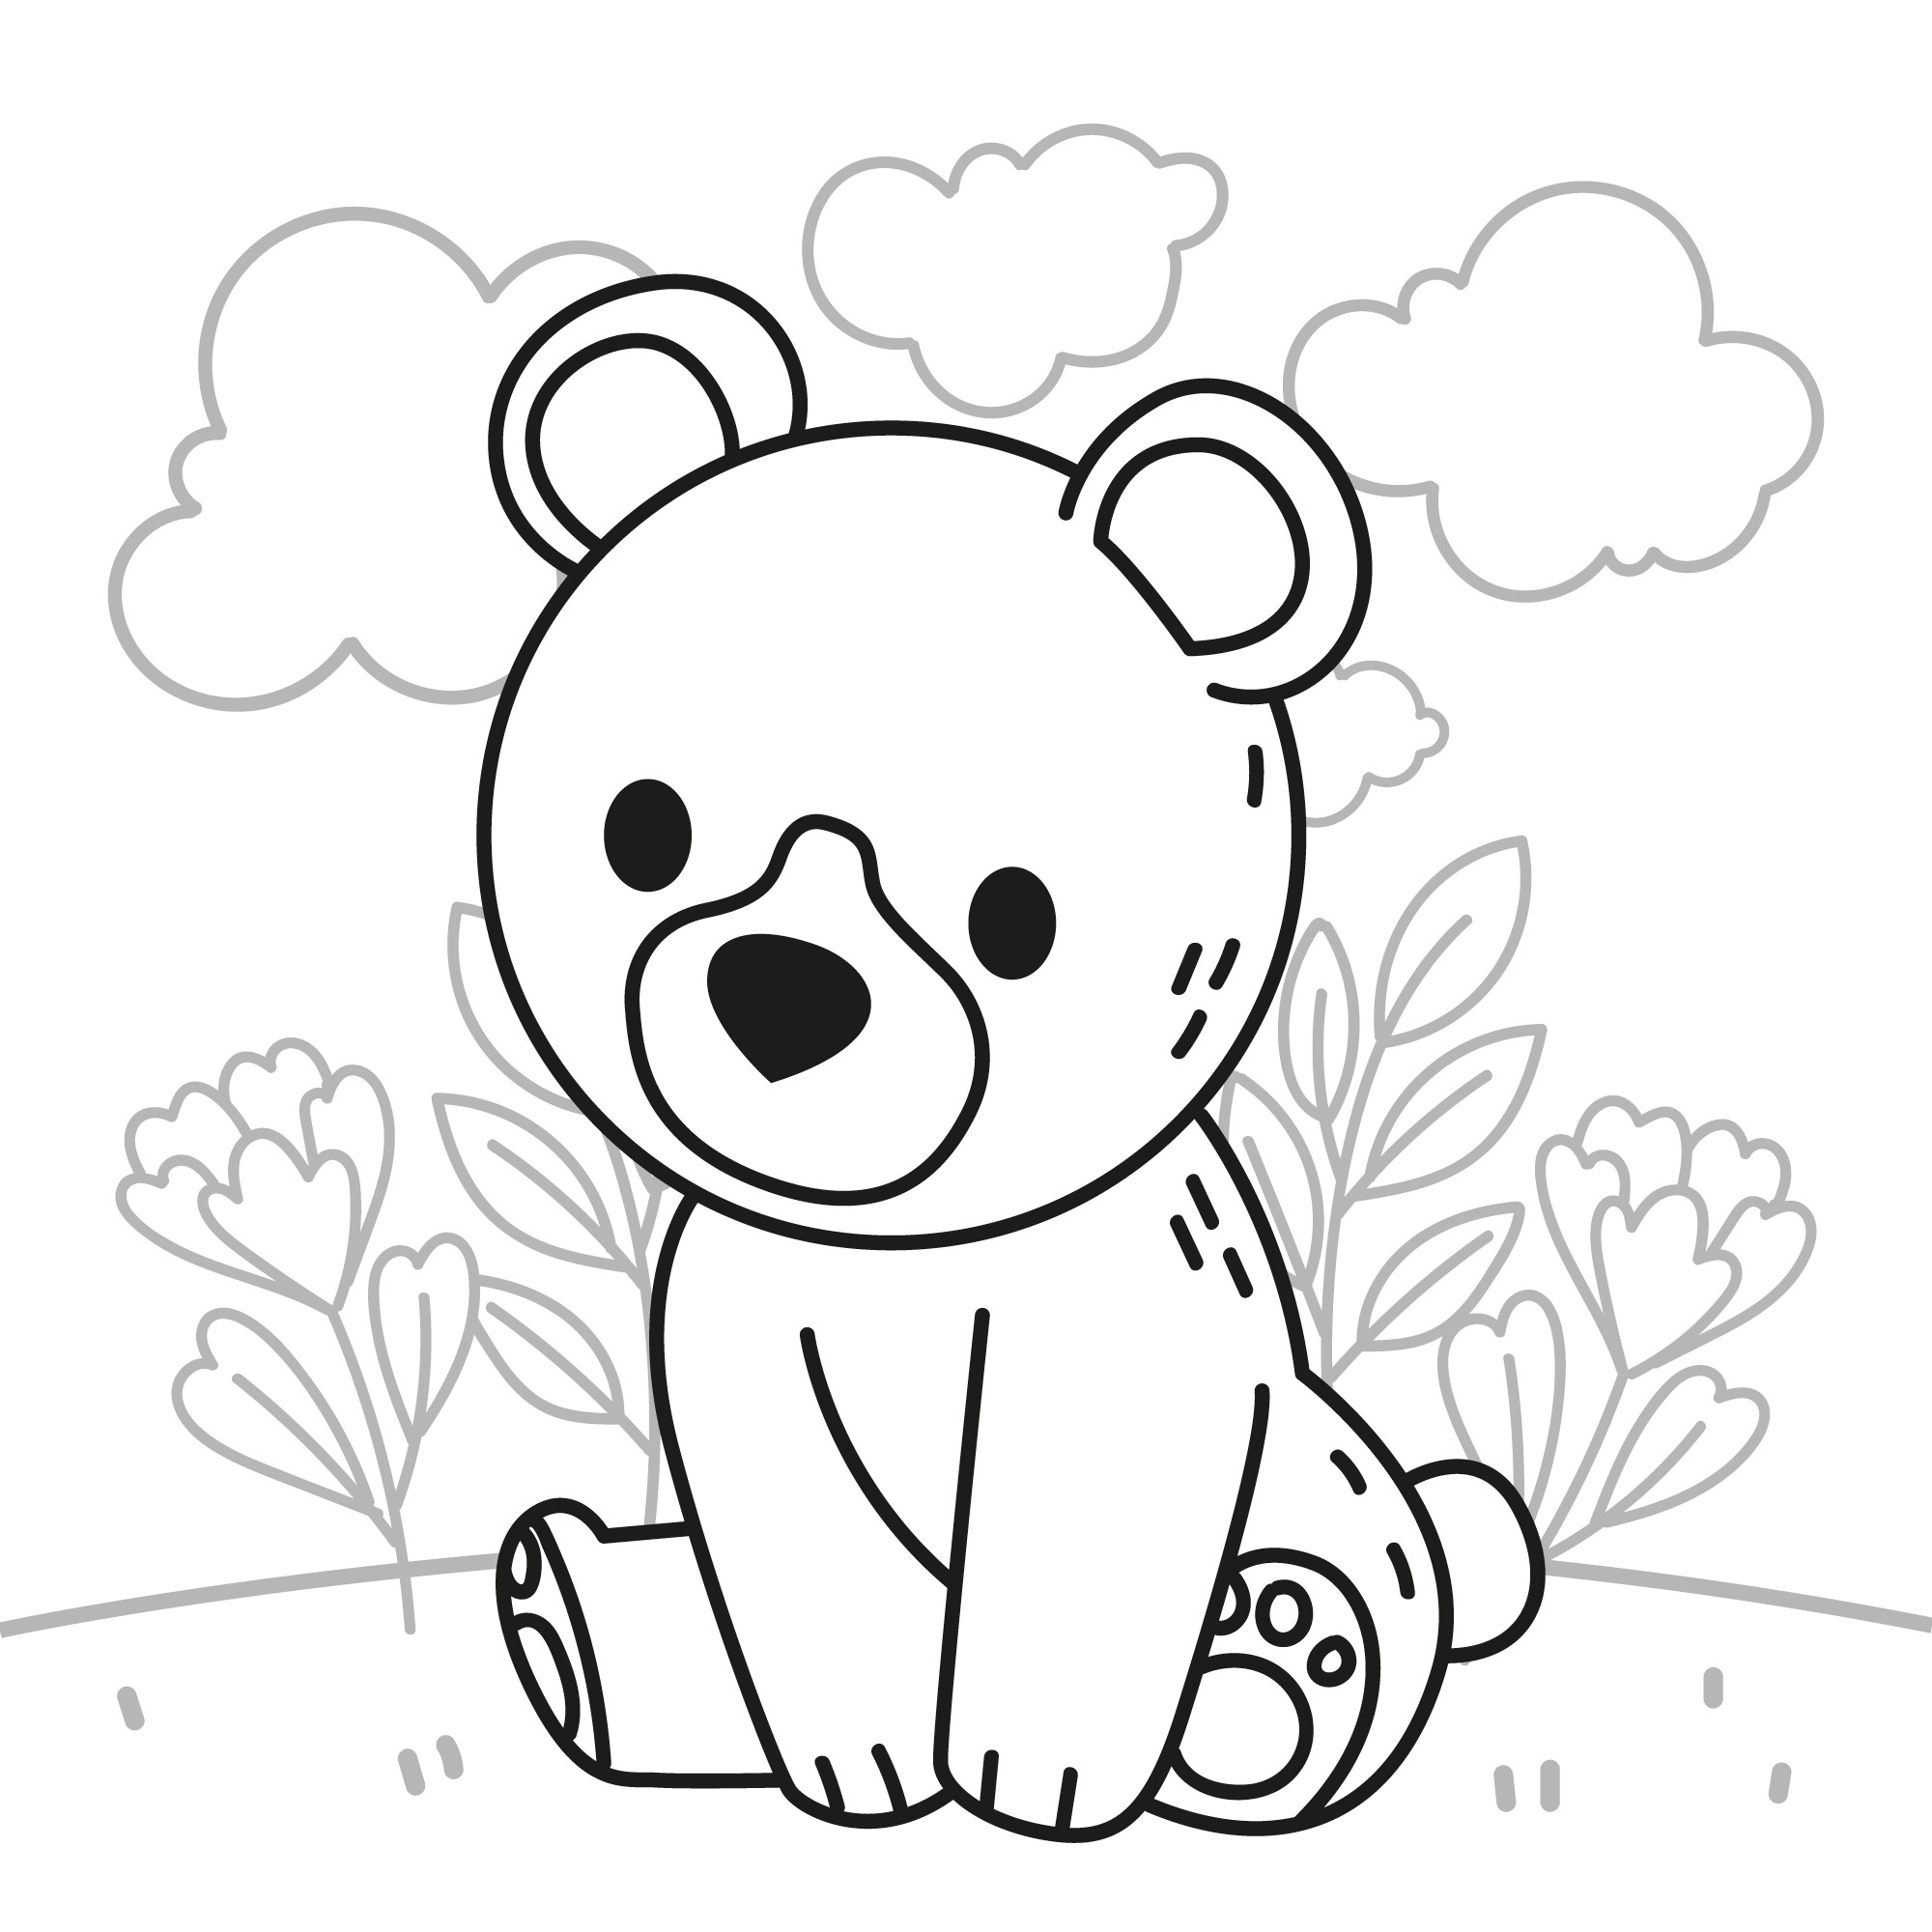 Раскраска для детей: сонный медвежонок